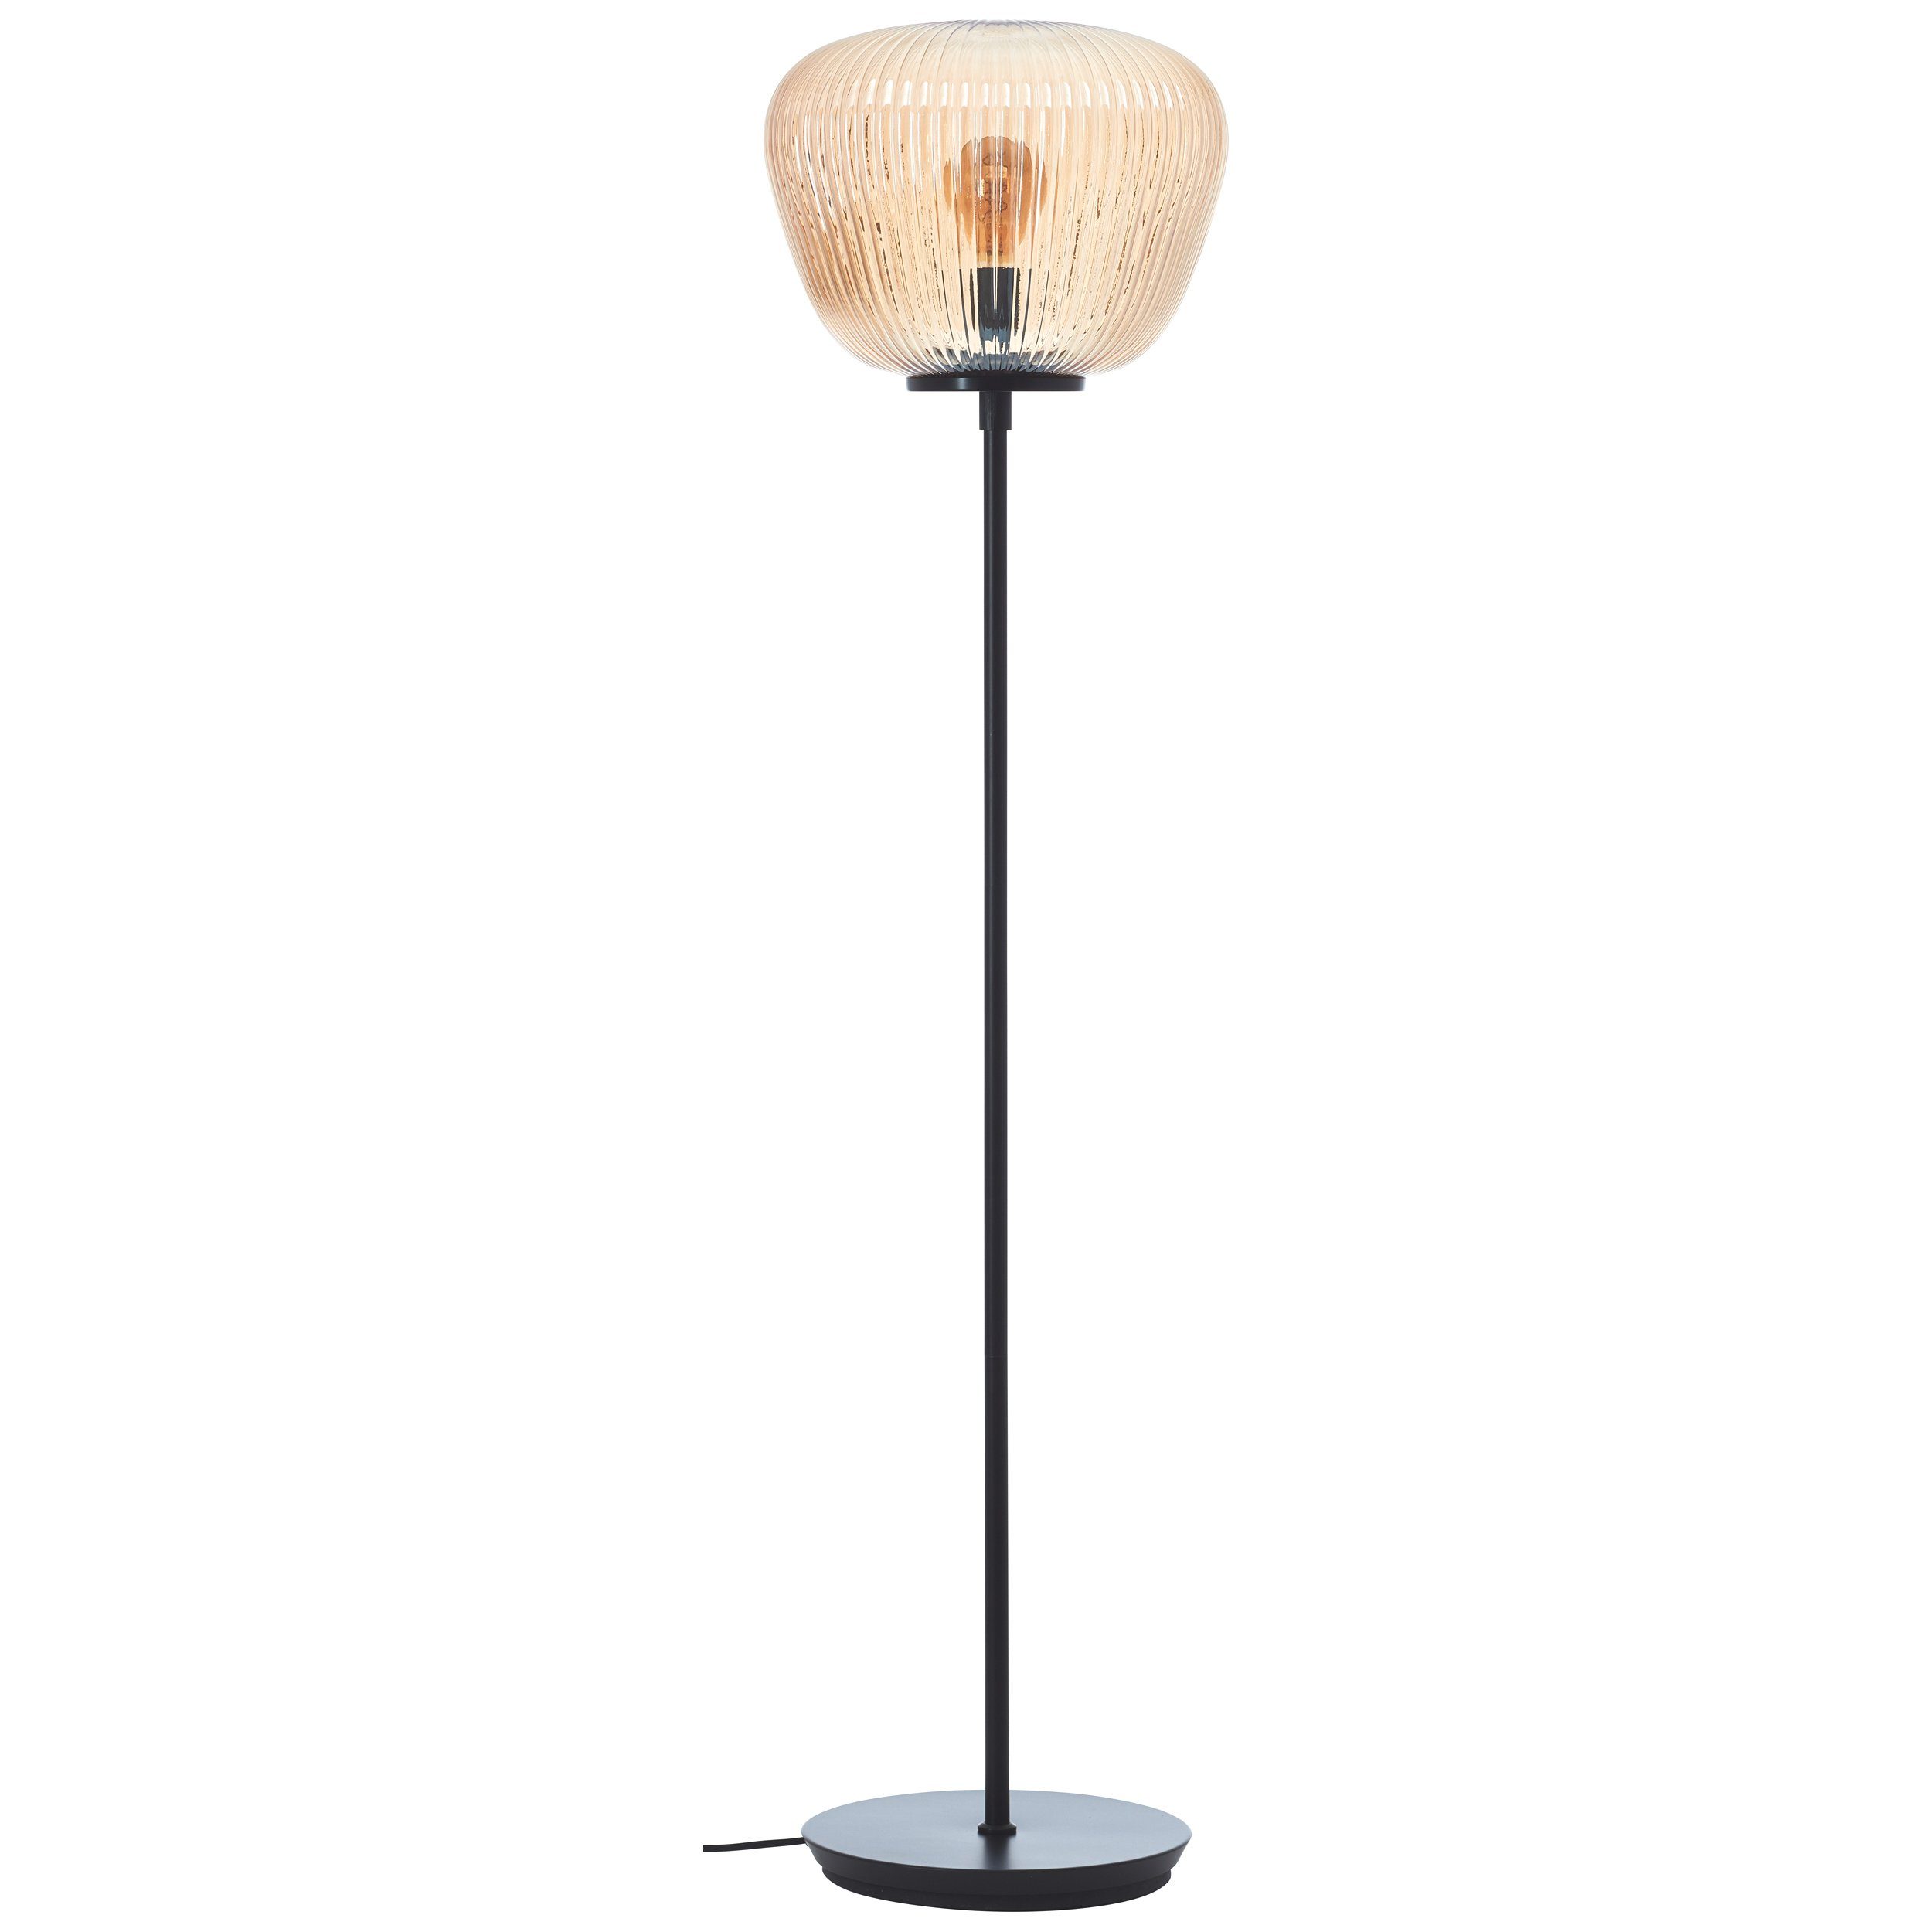 Amber-Bernsteinfarben Riffelglas, E27, x 140 35 cm, Stehlampe, Lightbox Stehlampe, ohne Leuchtmittel,